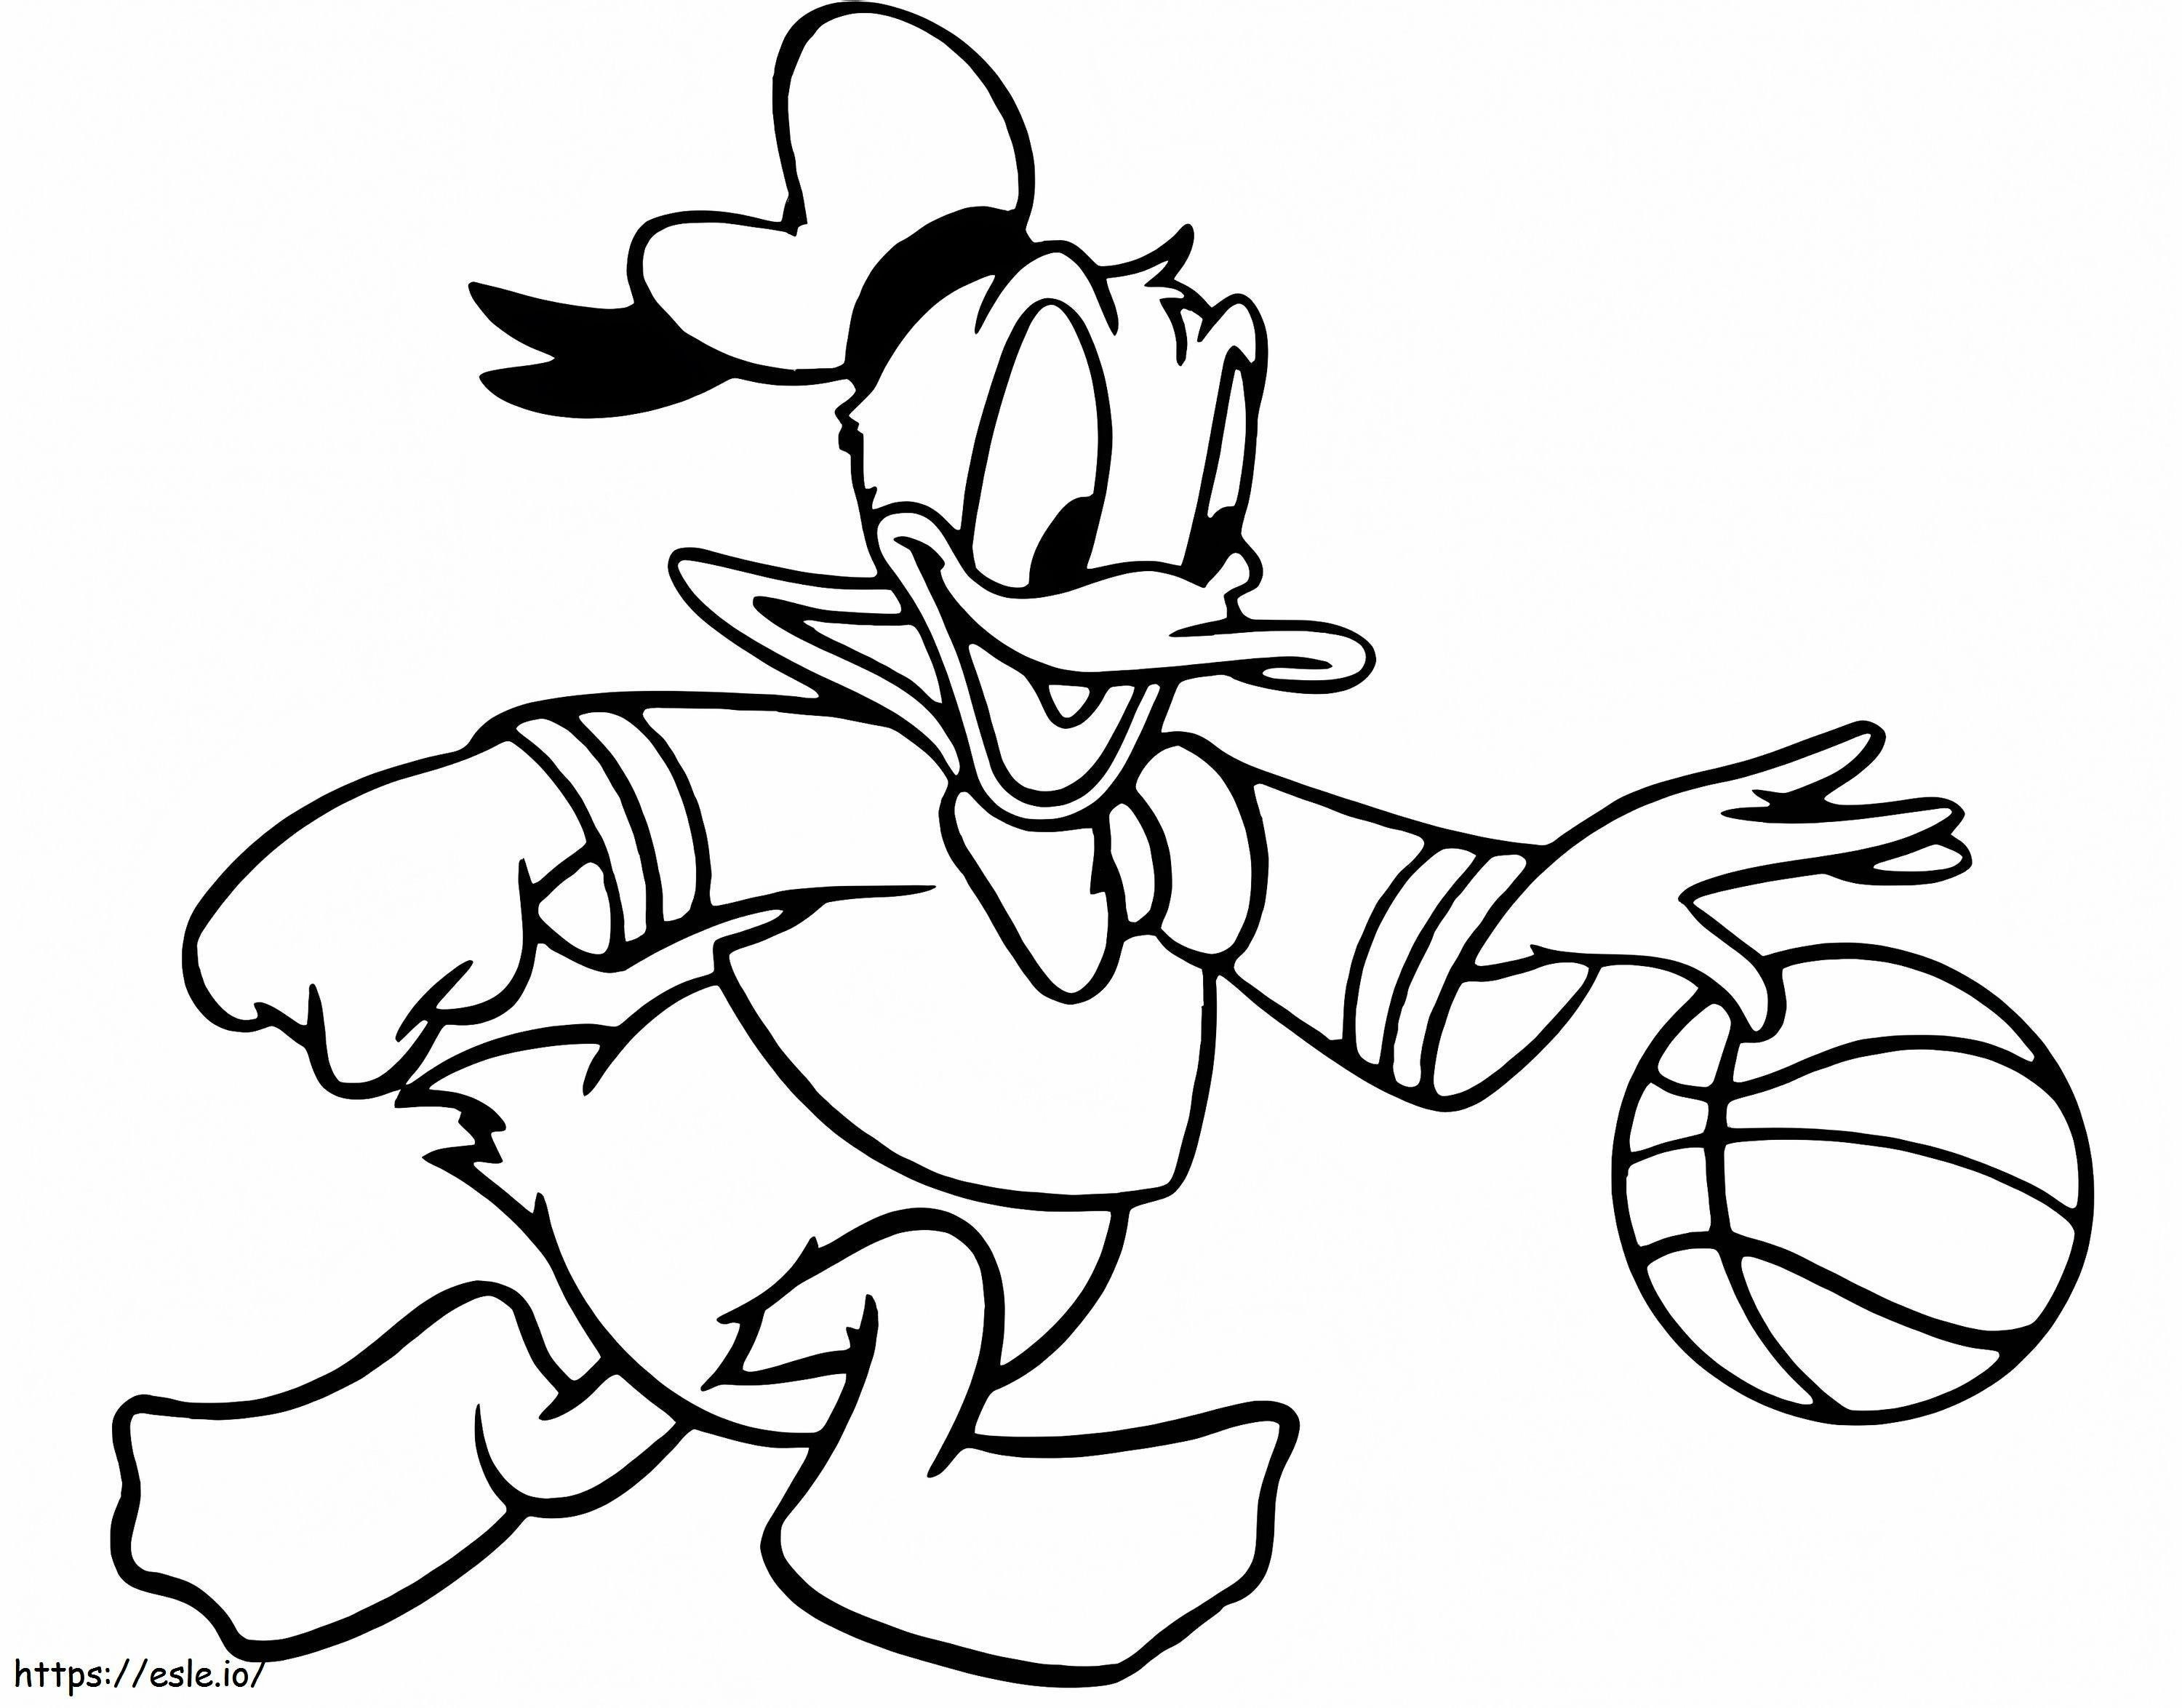 Pato Donald jogando basquete para colorir